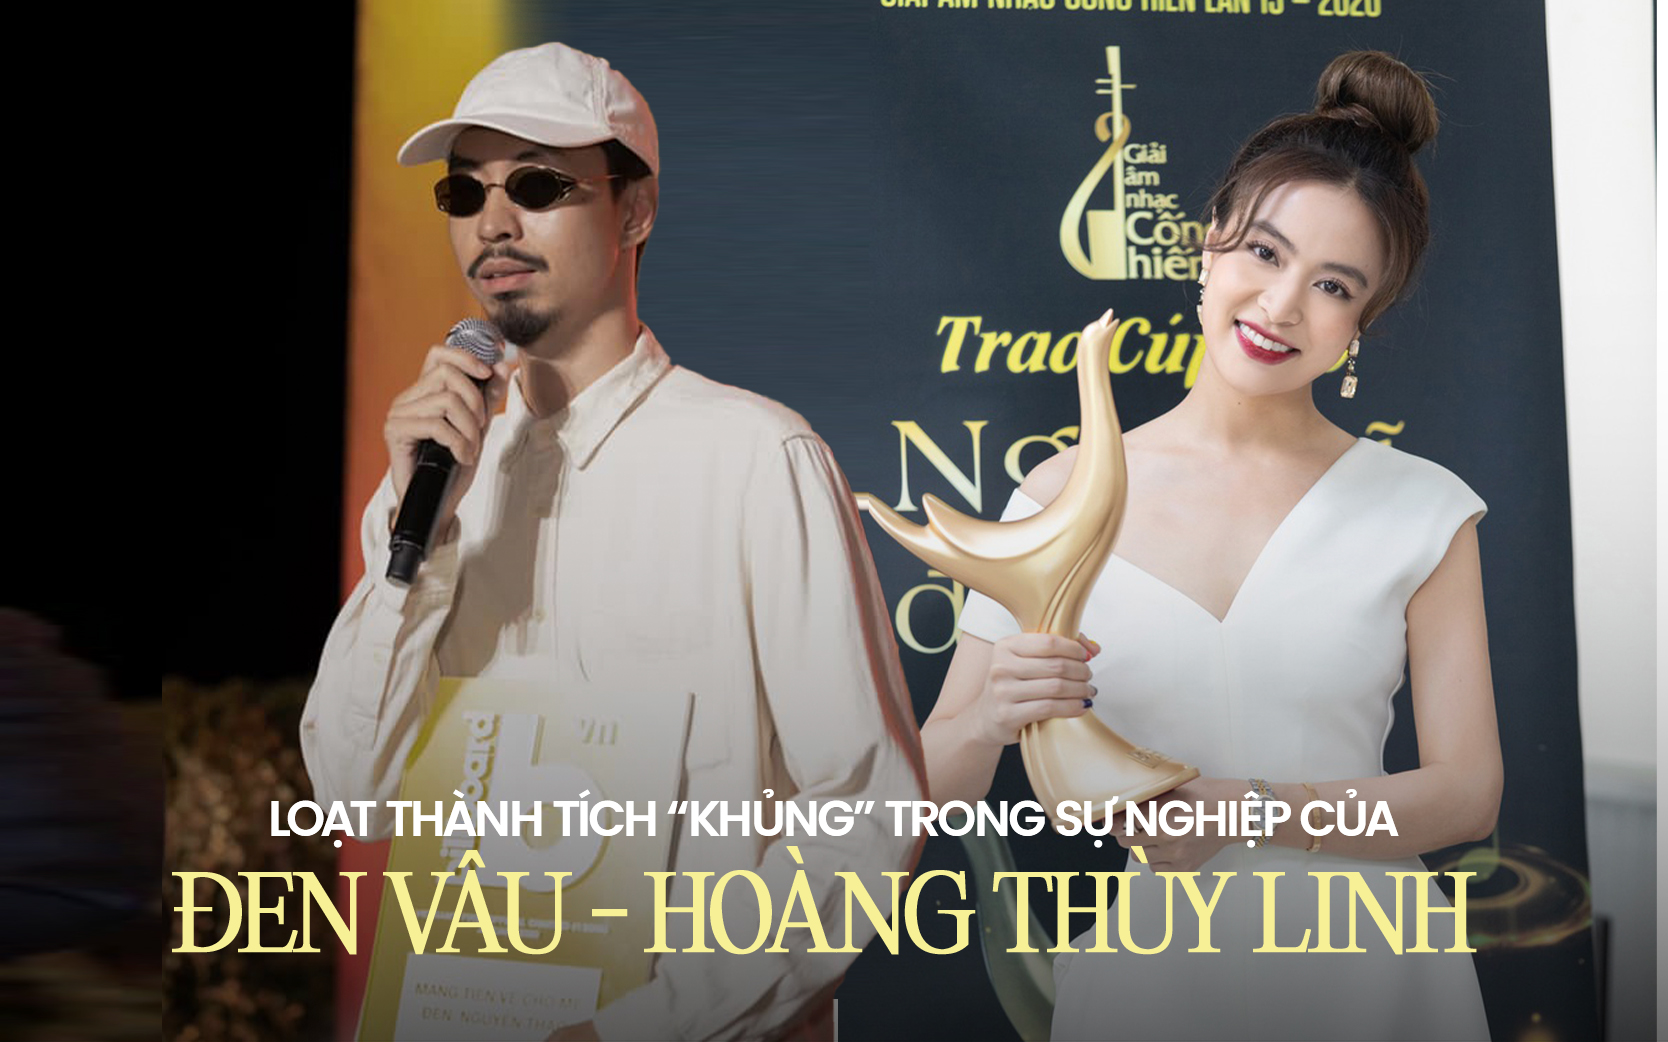 Đen Vâu - Hoàng Thùy Linh: Chàng lập kỷ lục YouTube Vpop, nàng tạo cá tính âm nhạc riêng biệt với loạt giải thưởng danh giá - Ảnh 1.